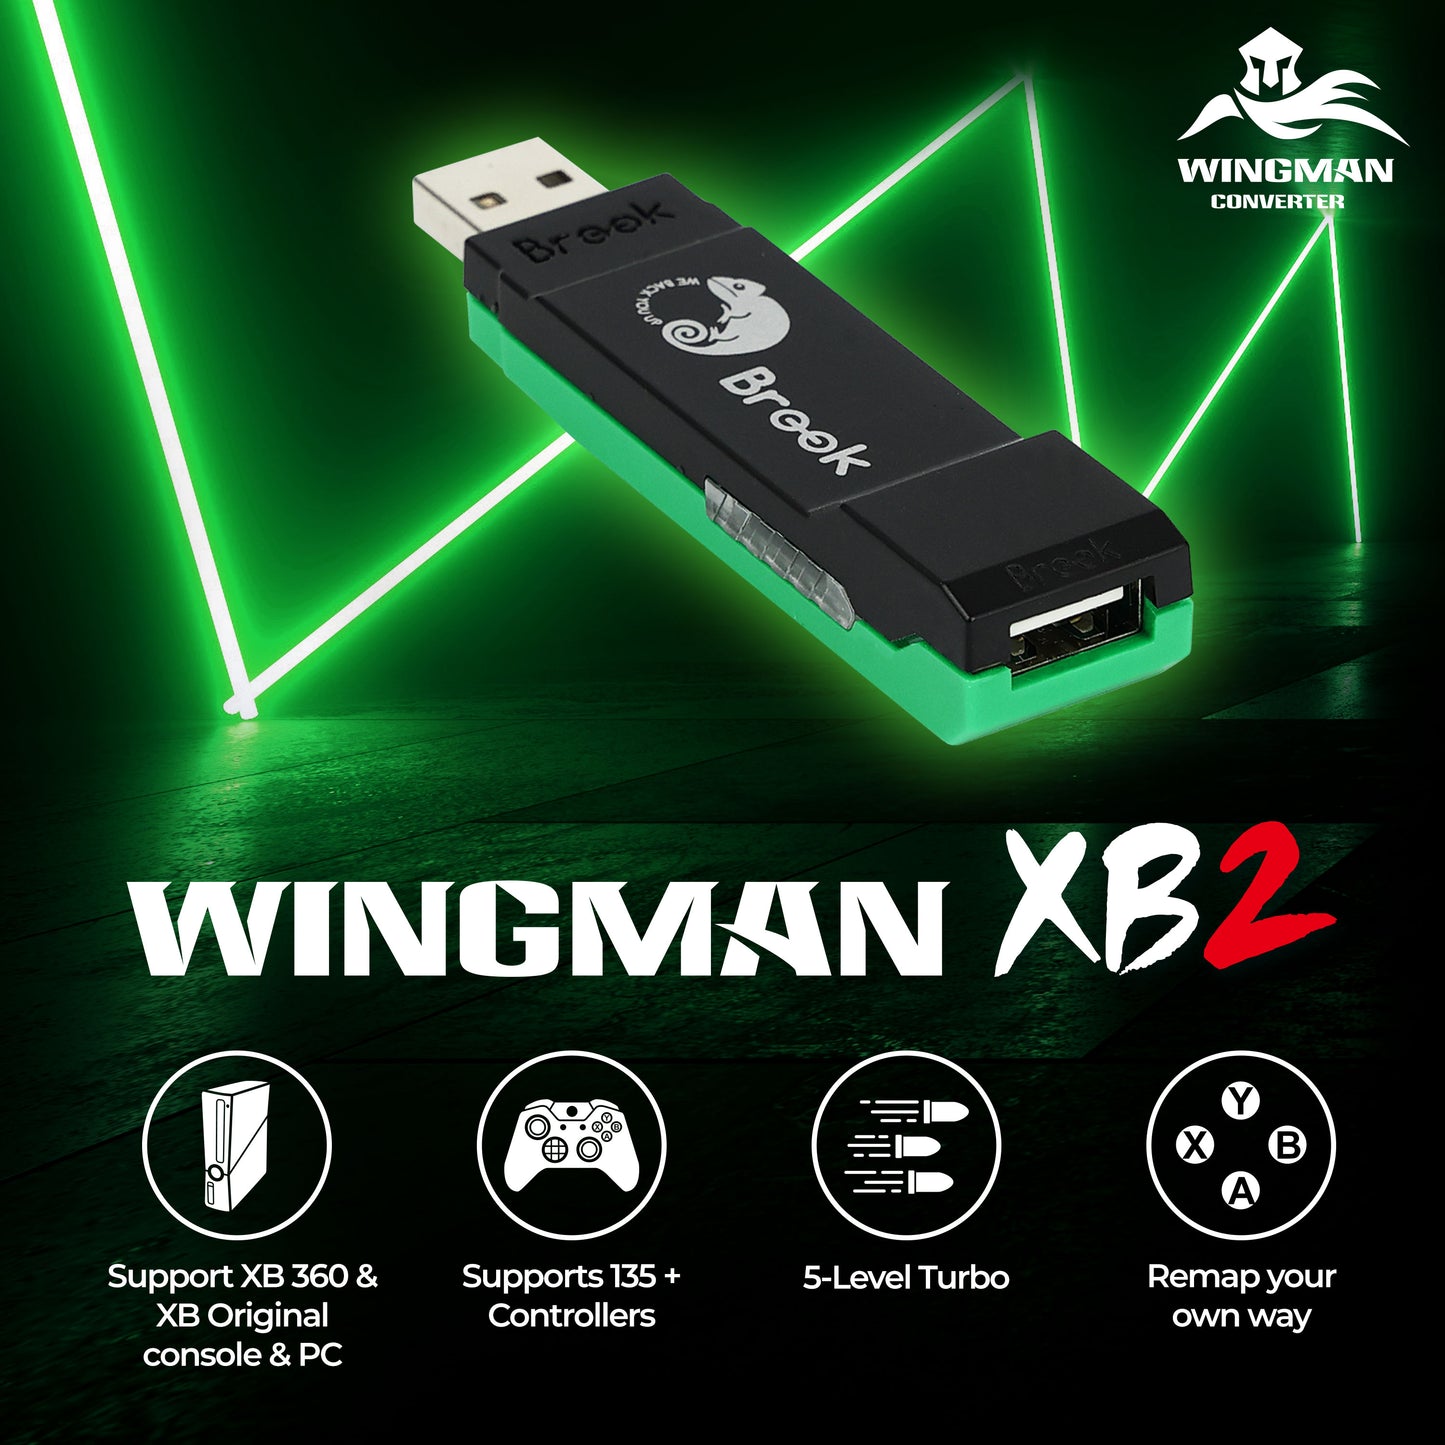 Wingman XB2